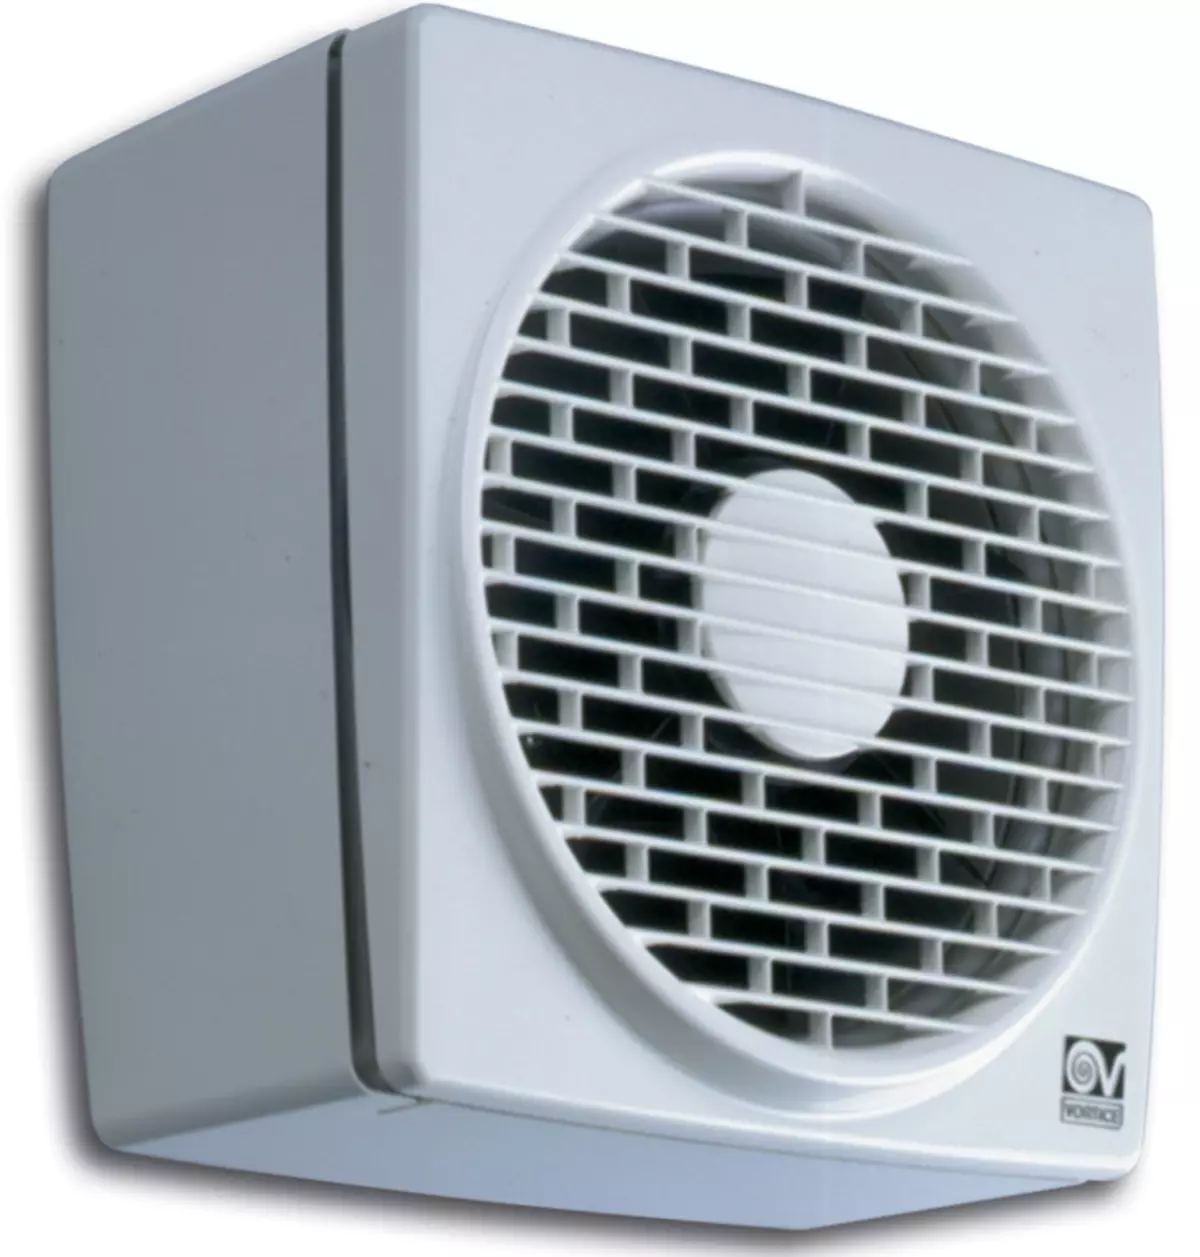 Ventilator u toalet: ispušni ventilator s provjerom ventila i tihi stropni ventilatori za kupaonice, ostale opcije. Što je bolje odabrati model? 10469_21